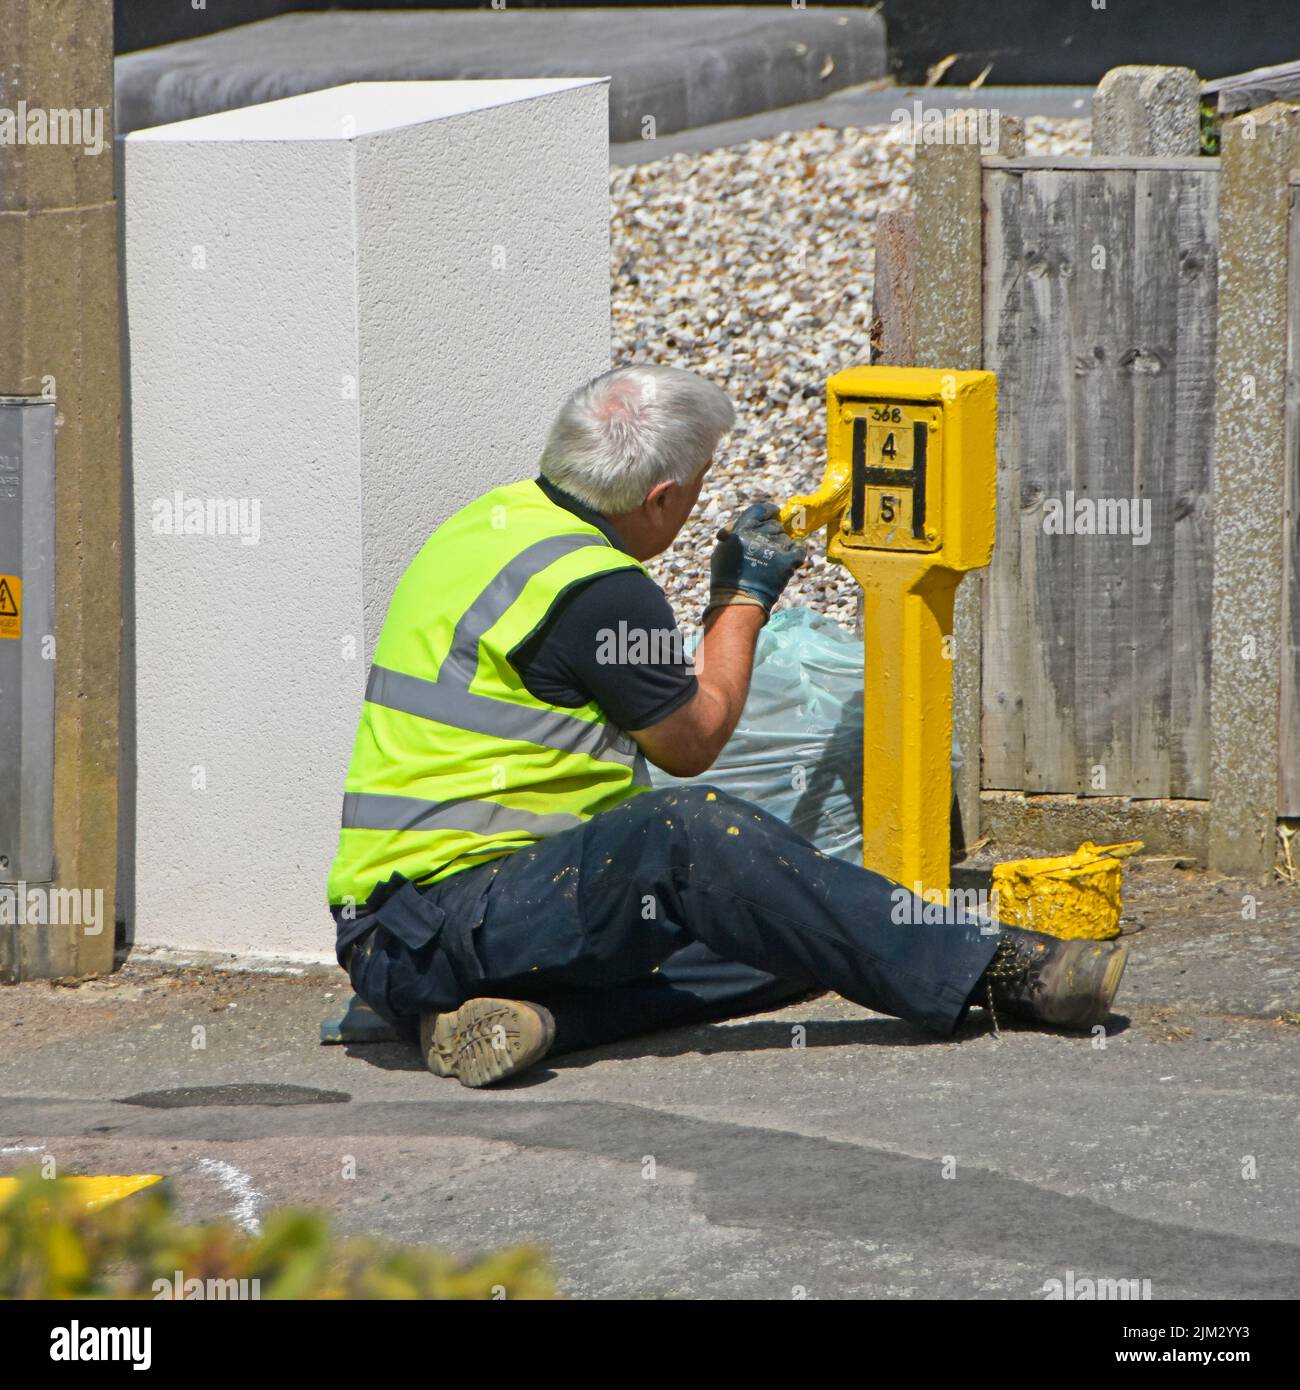 Obrero del Servicio de Bomberos y Rescate de Essex sentado en el pavimento con maceta de pintura amarilla letrero de hidrante callejero con chaqueta de alta visibilidad del Reino Unido Foto de stock